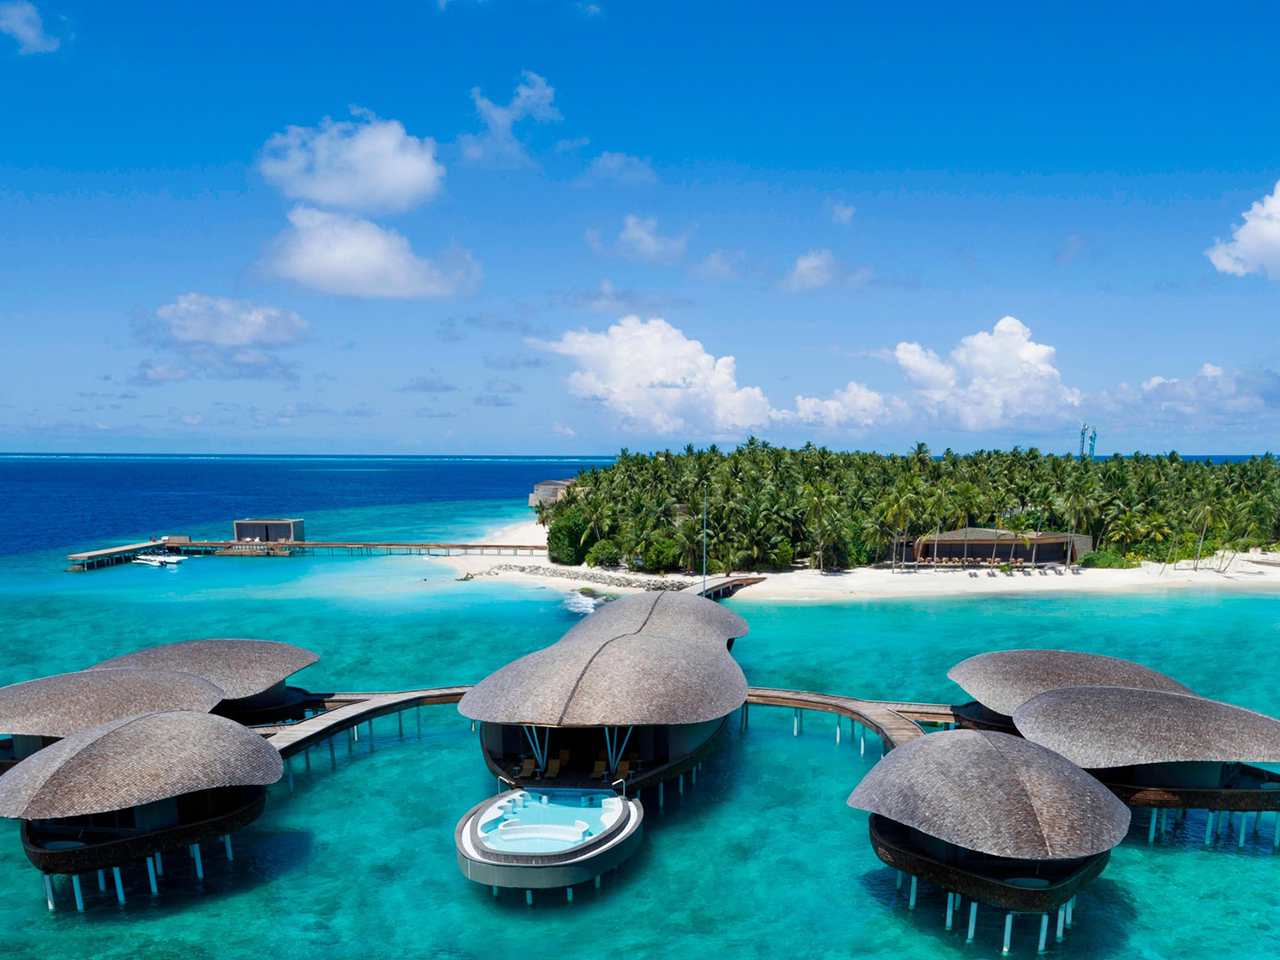 he St. Regis Maldives Vommuli Resort<br />
